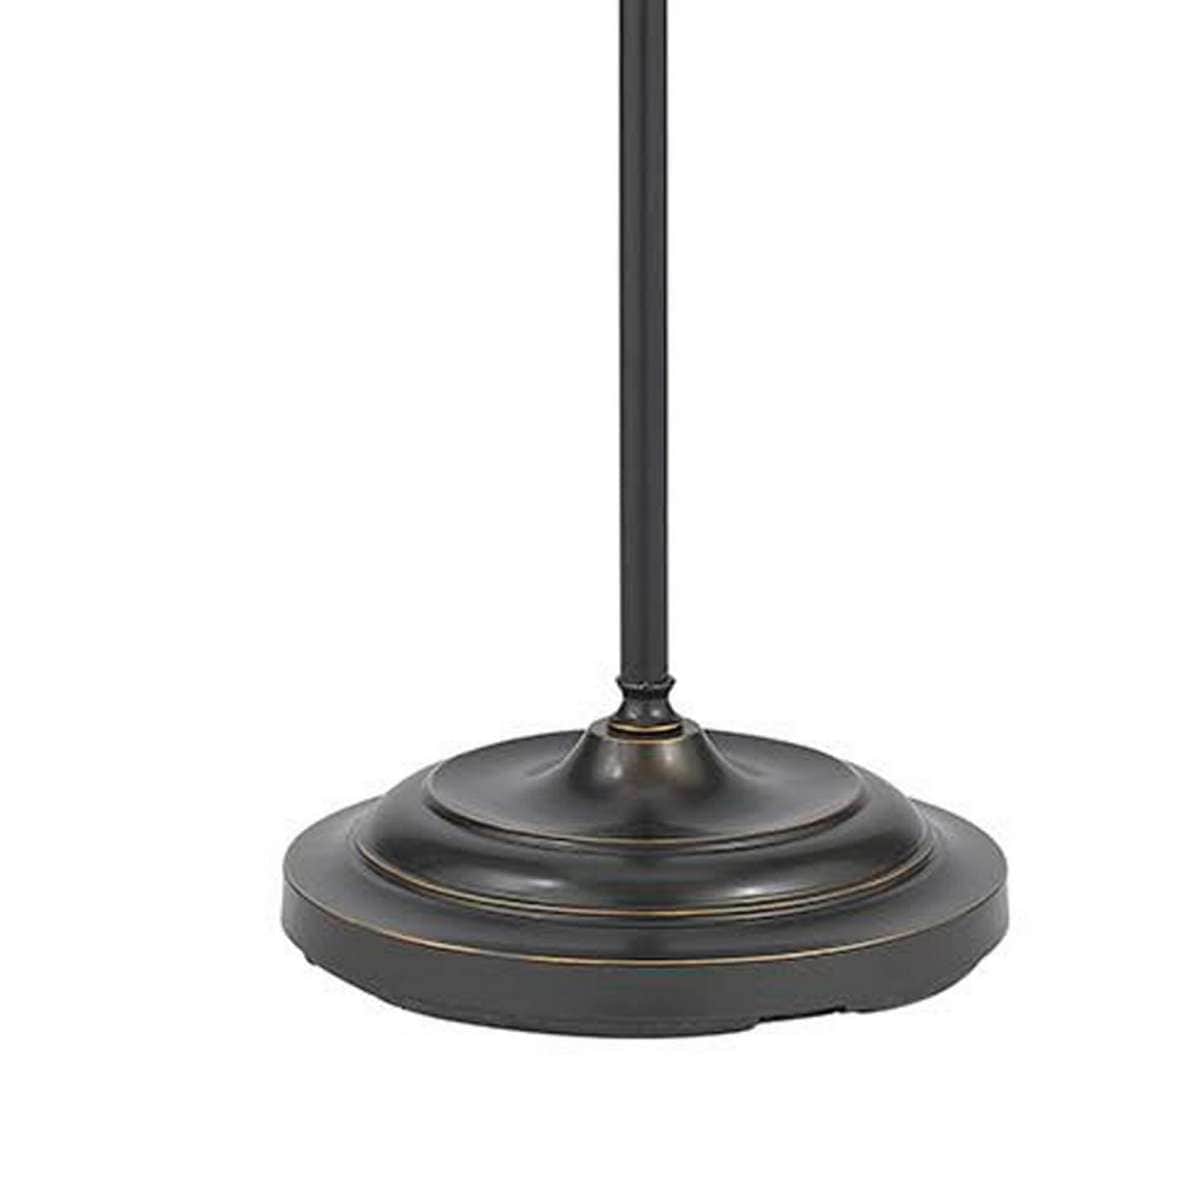 Benzara Metal Round 62" Floor Lamp With Adjustable Pole, Dark Bronze By Benzara Floor Lamps BM225100